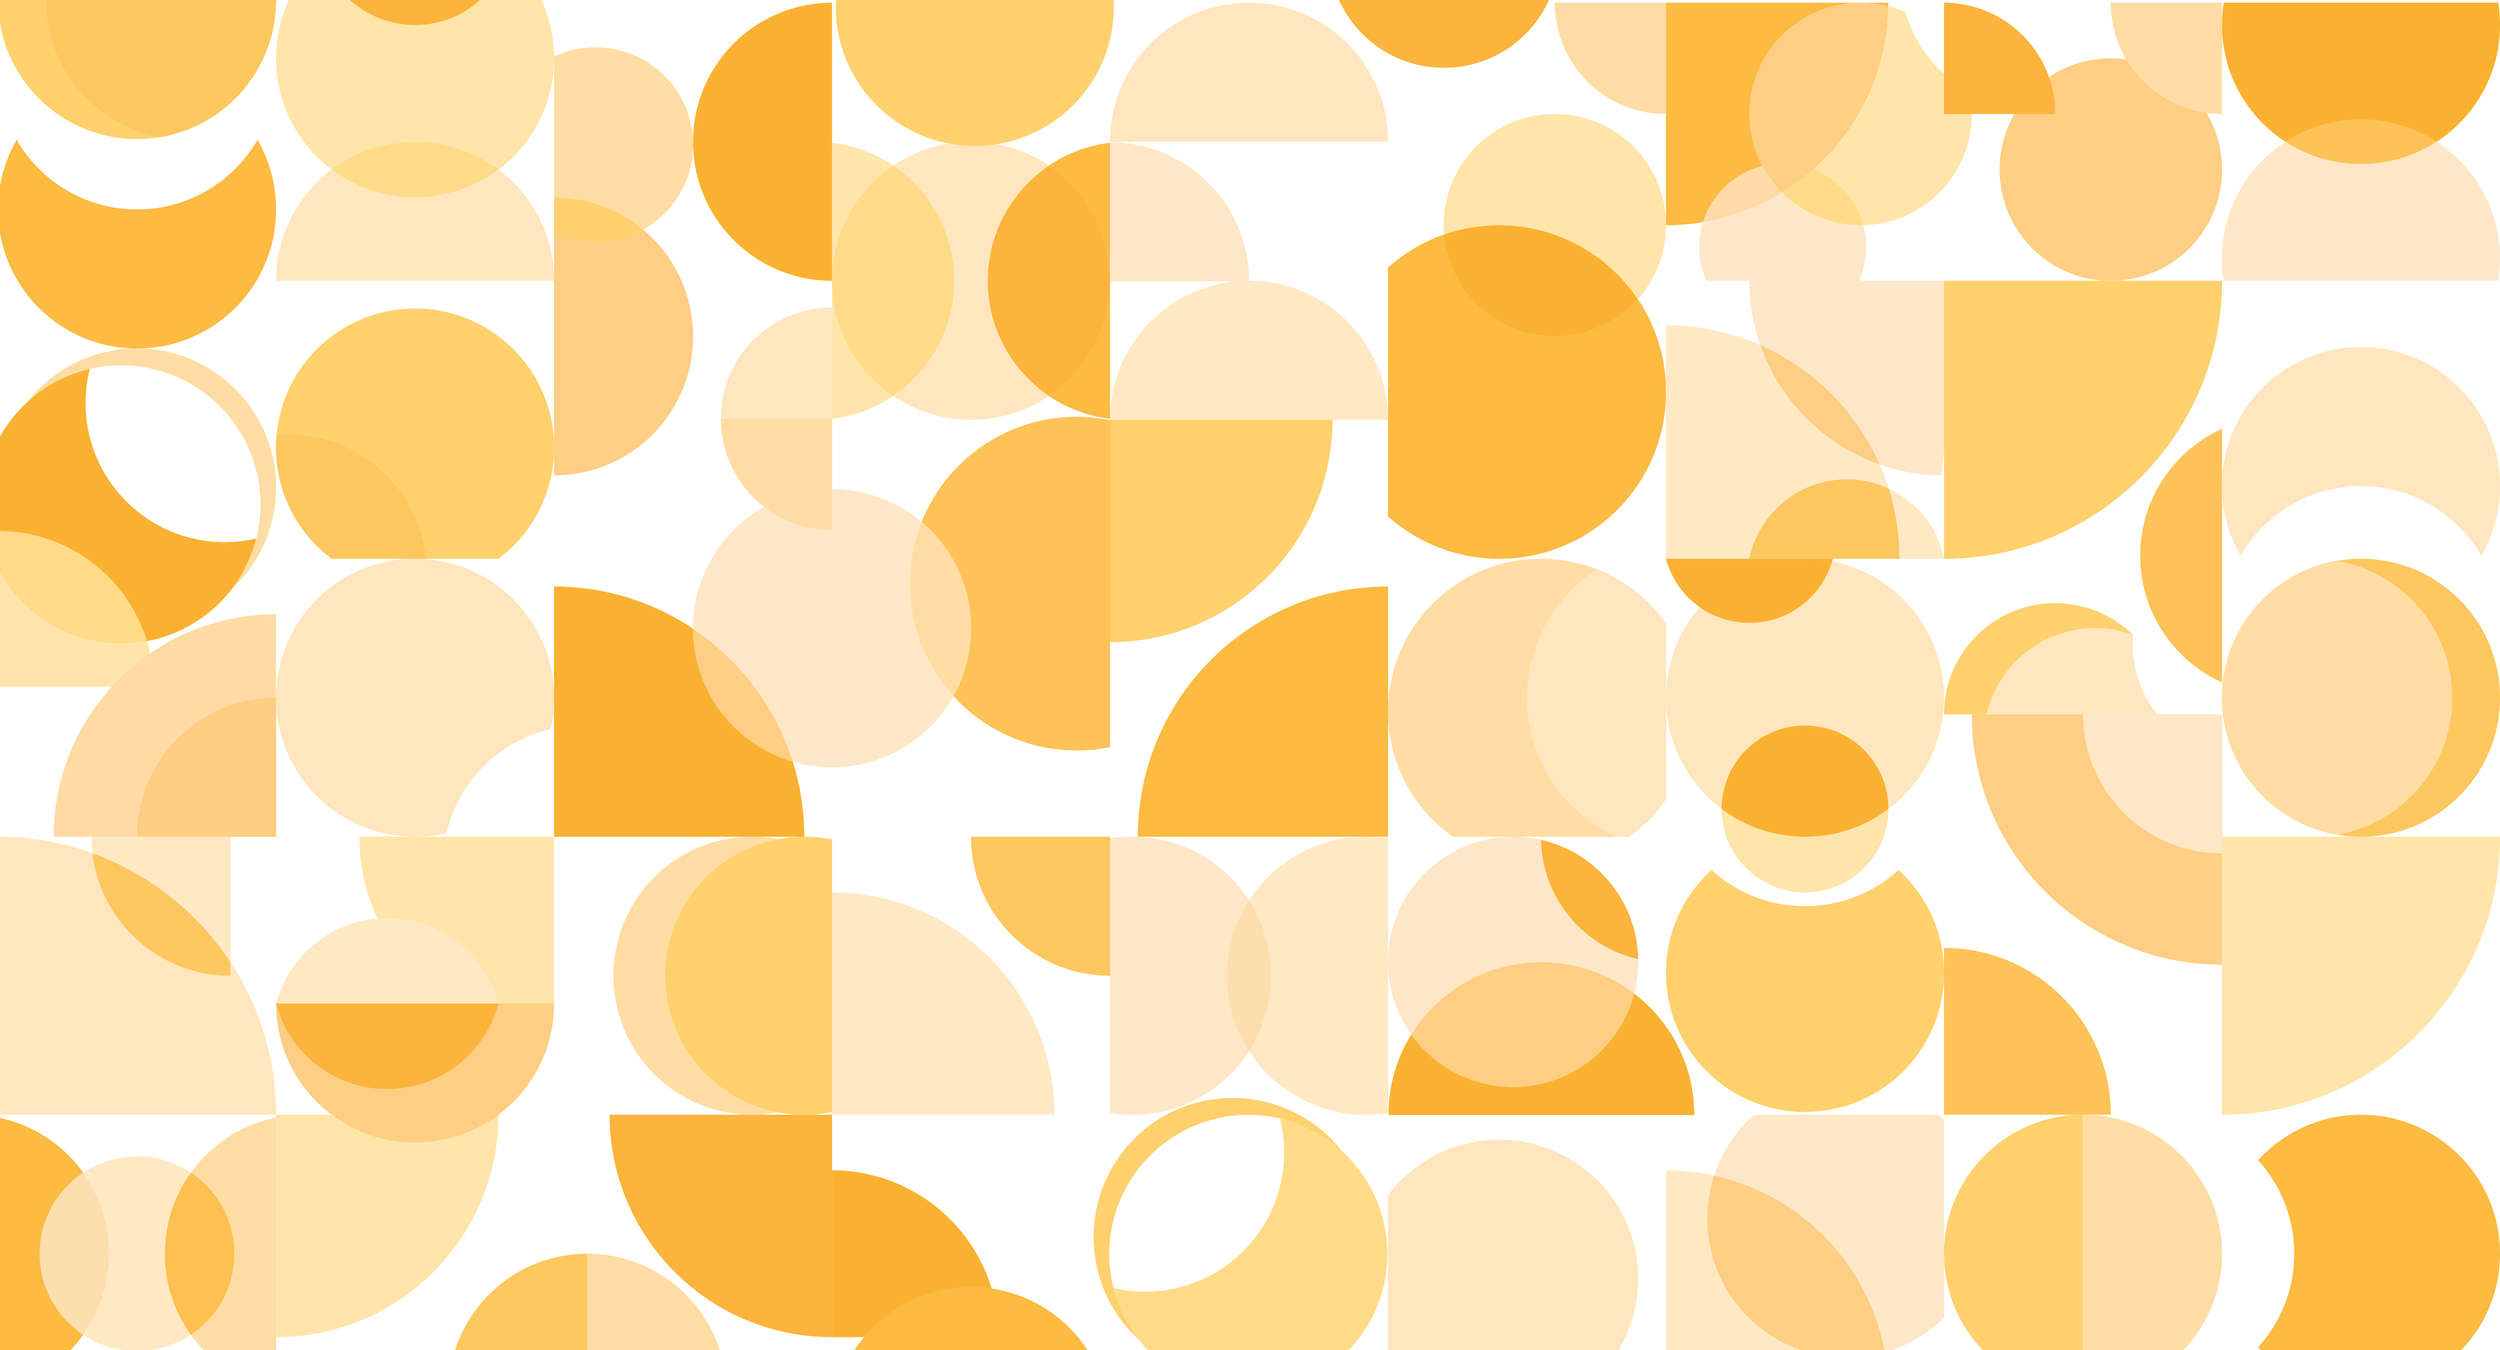             Mural de pared de diseño retro, patrón geométrico - naranja, amarillo, blanco
        